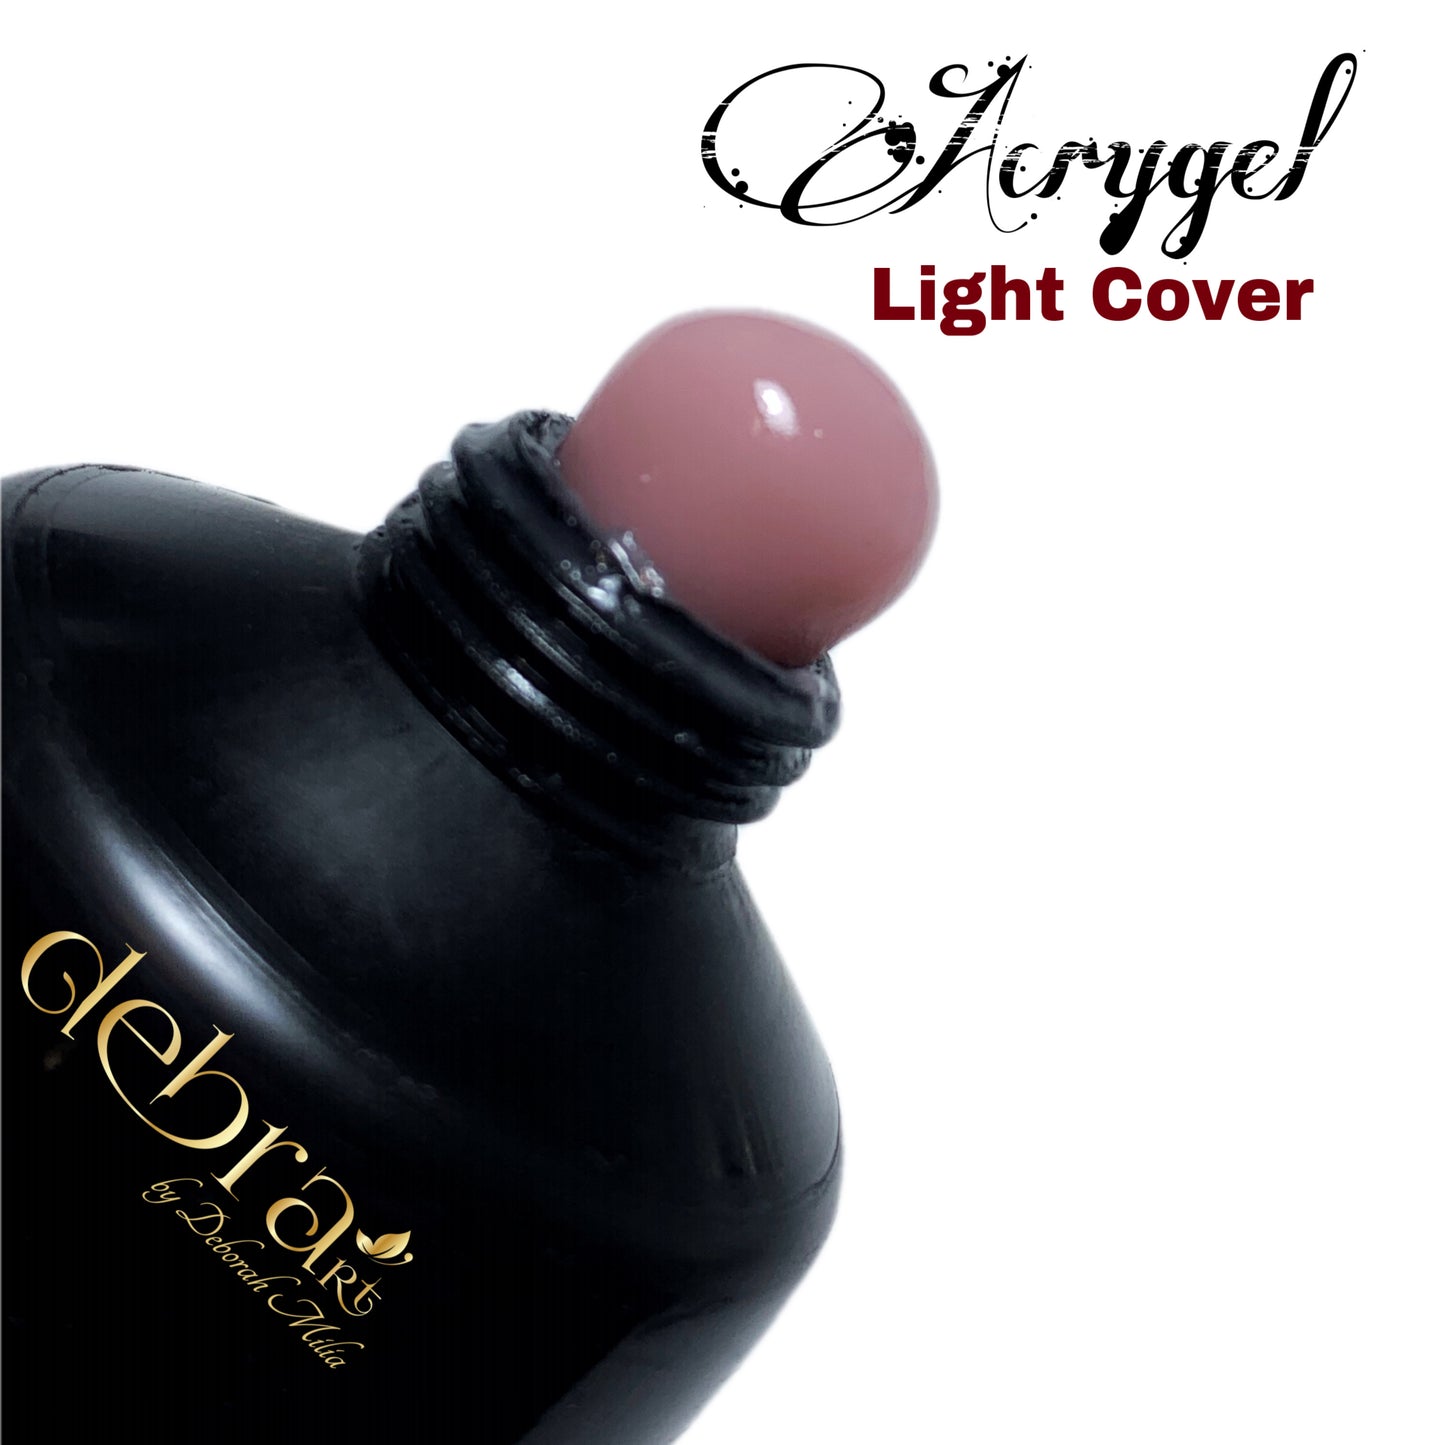 Acrygel Light Cover